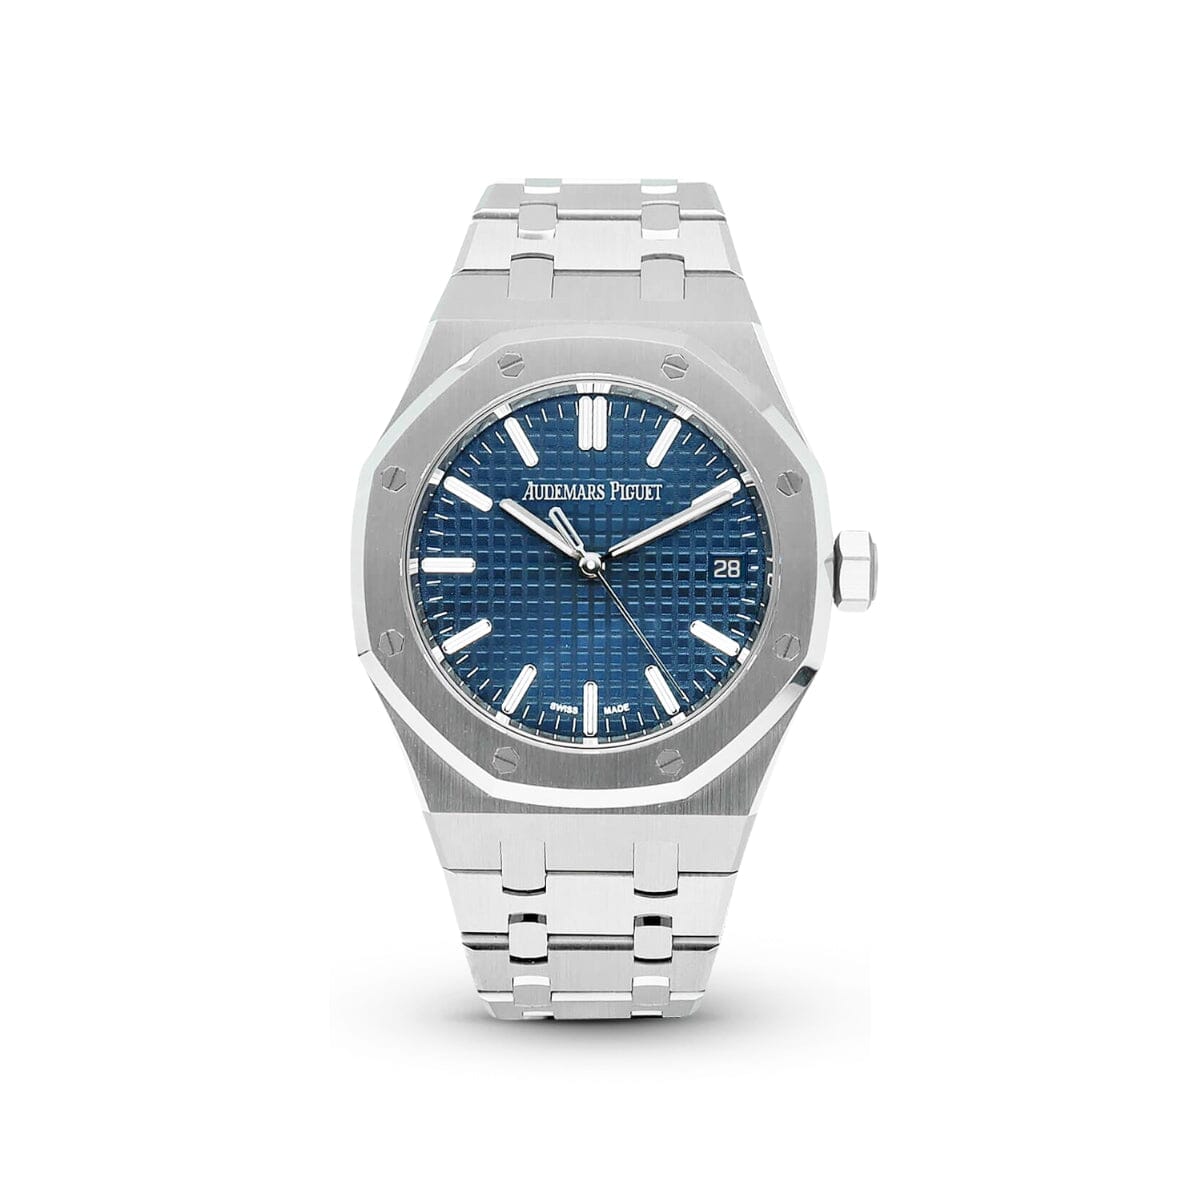 Royal Oak 37 50th Anniversary 15550ST Blue Watches Audemars Piguet 